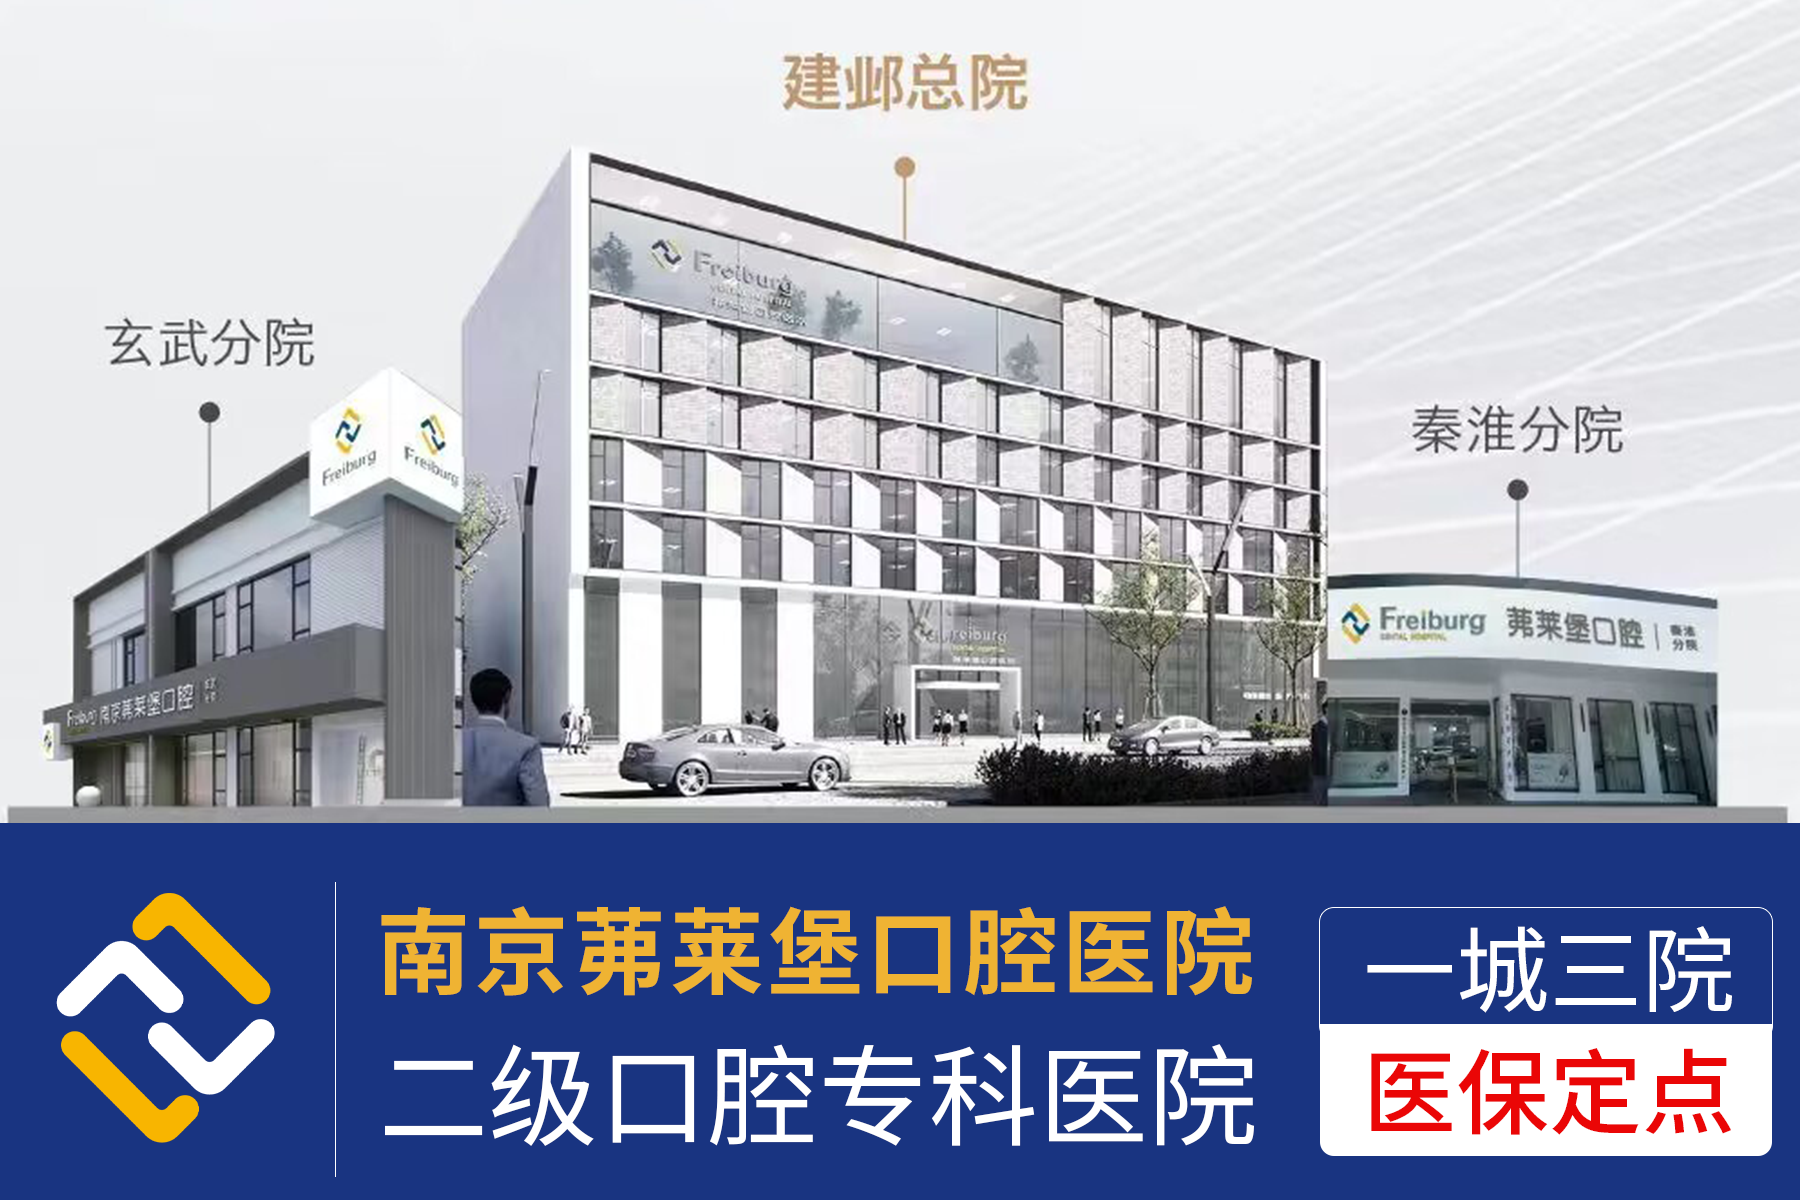 江苏南京正规治疗种植牙的口碑医院“问题讨论”种植牙可以一拖三吗